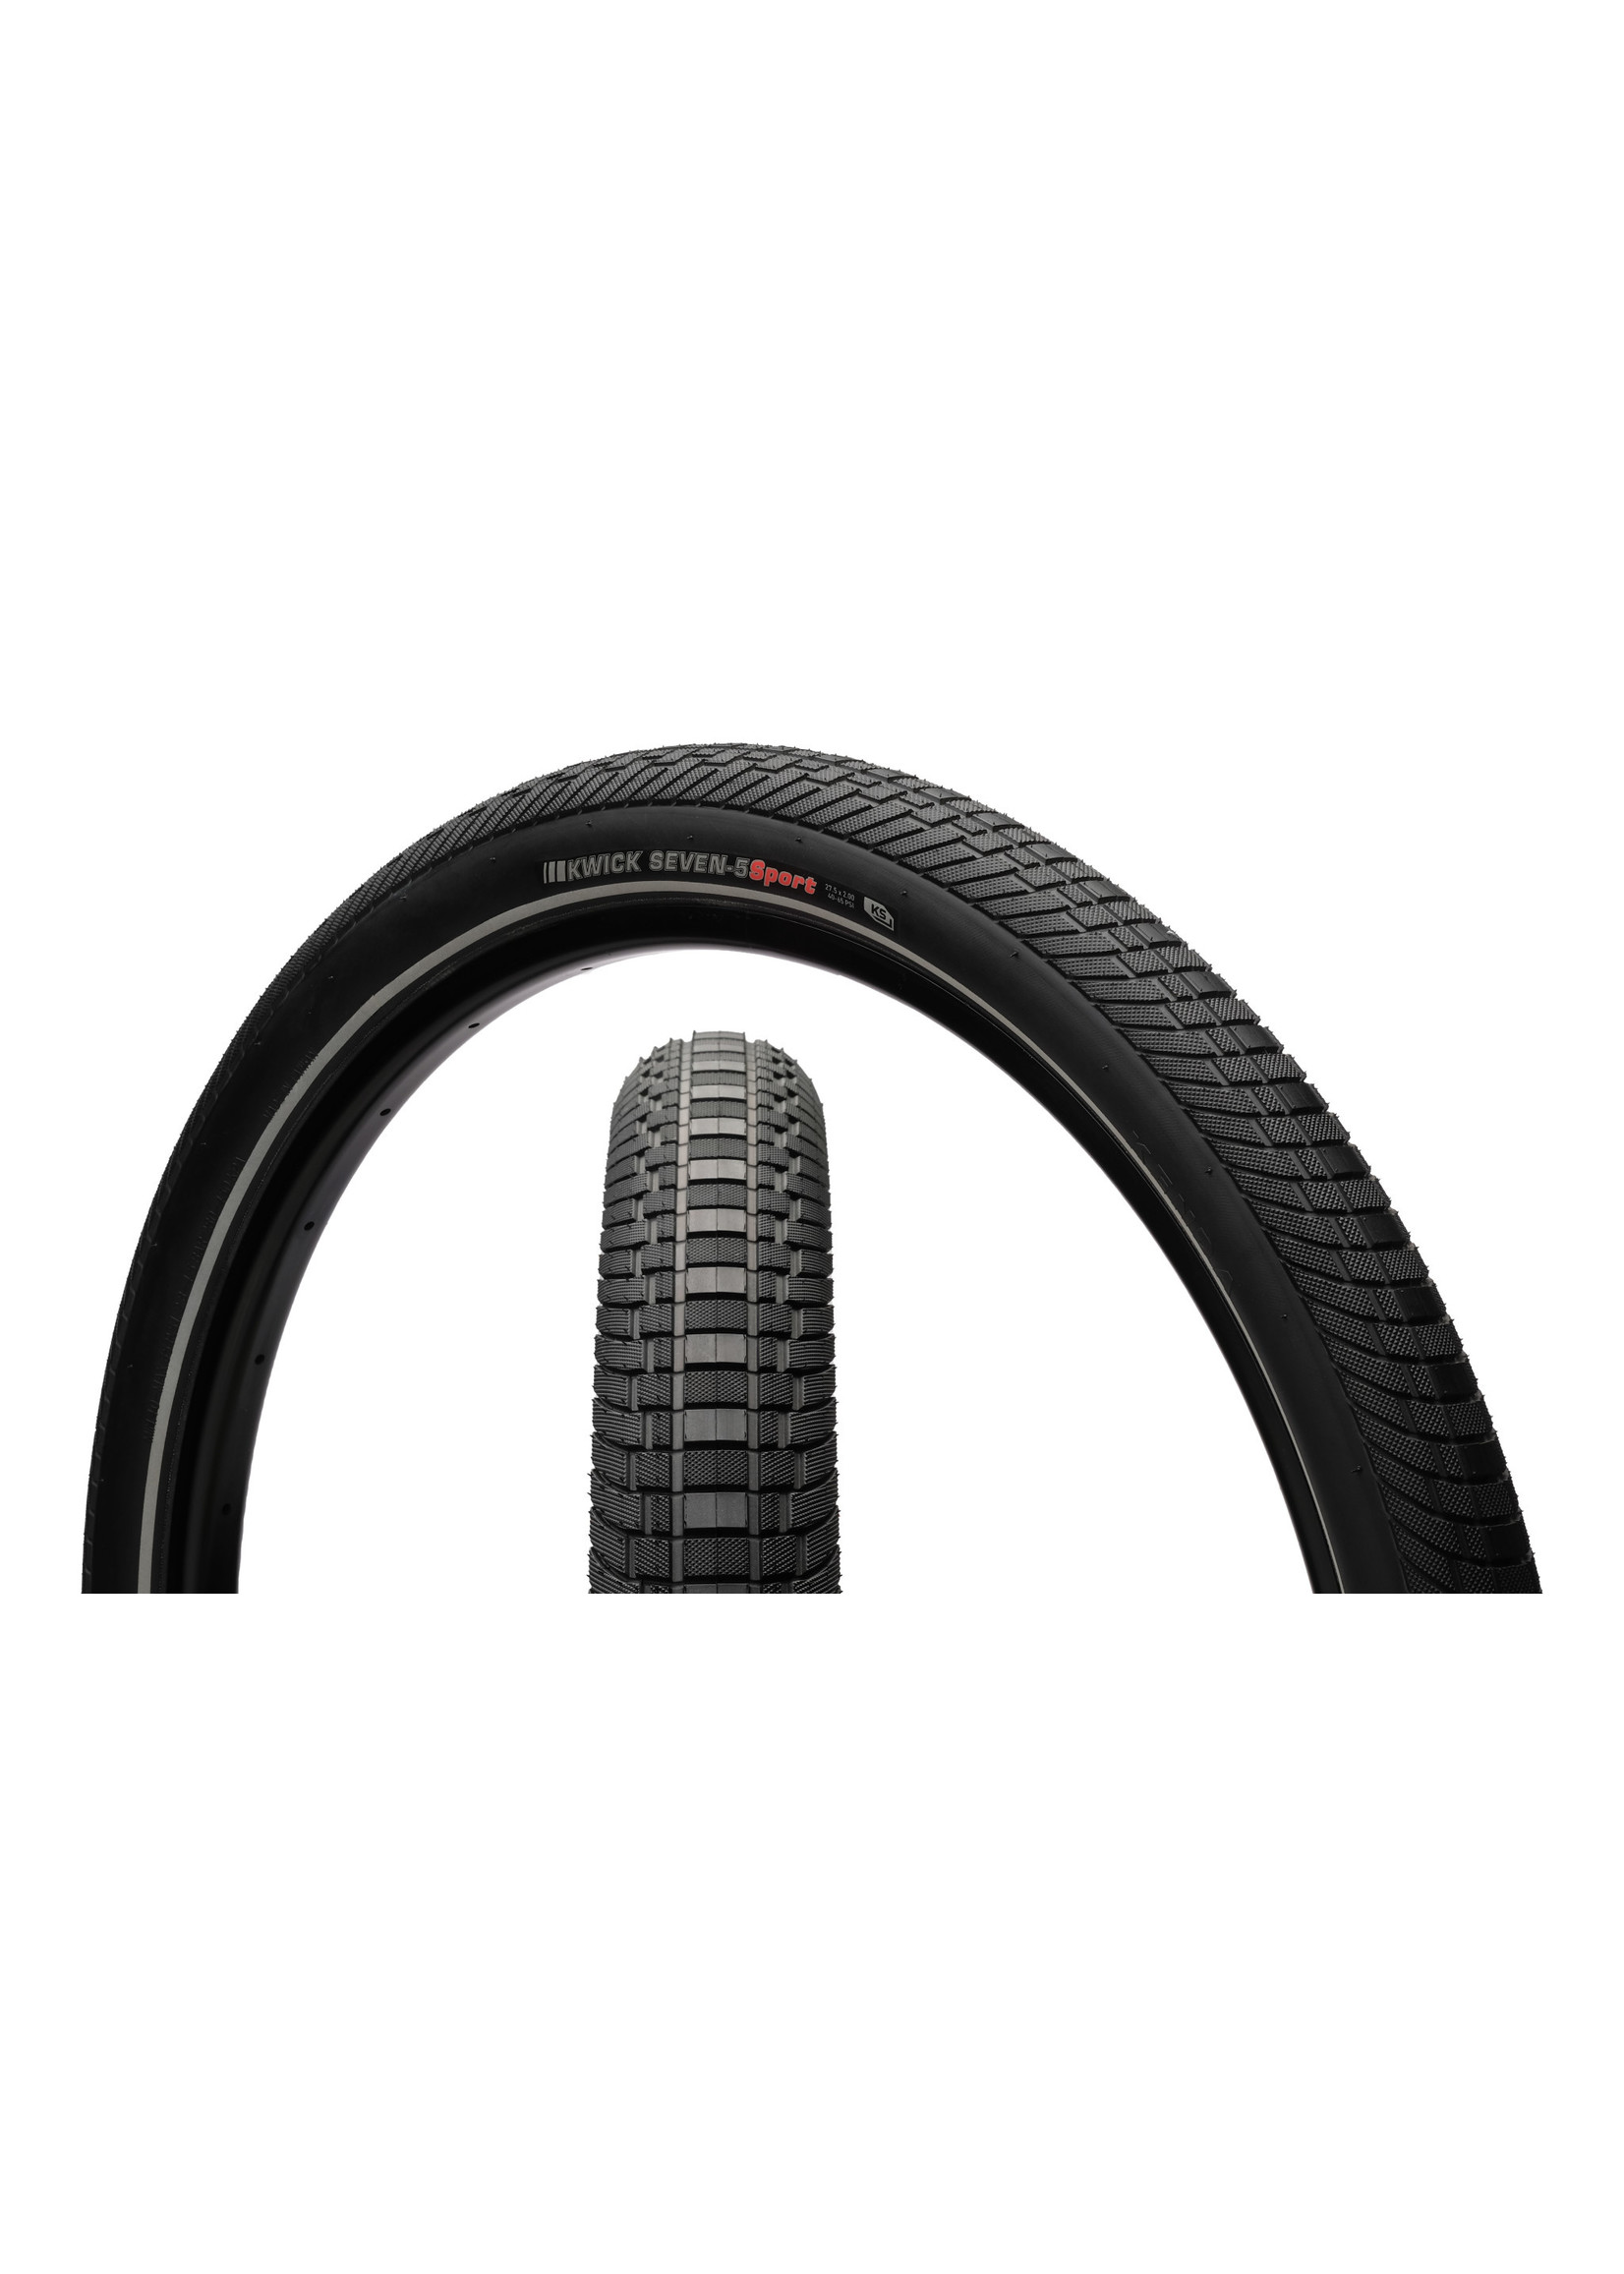 Kenda Kenda Kwick Seven.5 Tire - 27.5 x 2, Clincher, Wire, Black/Reflective, 60tpi, KS